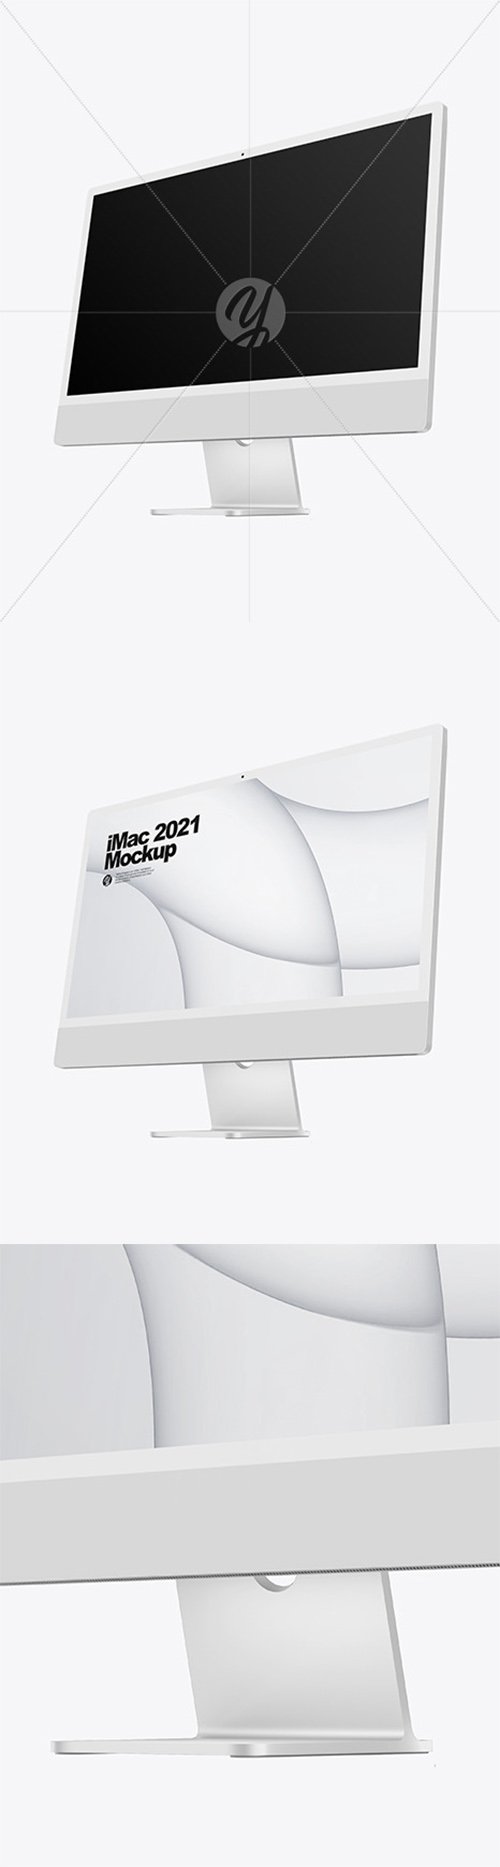 Silver iMac 24 Mockup 82255